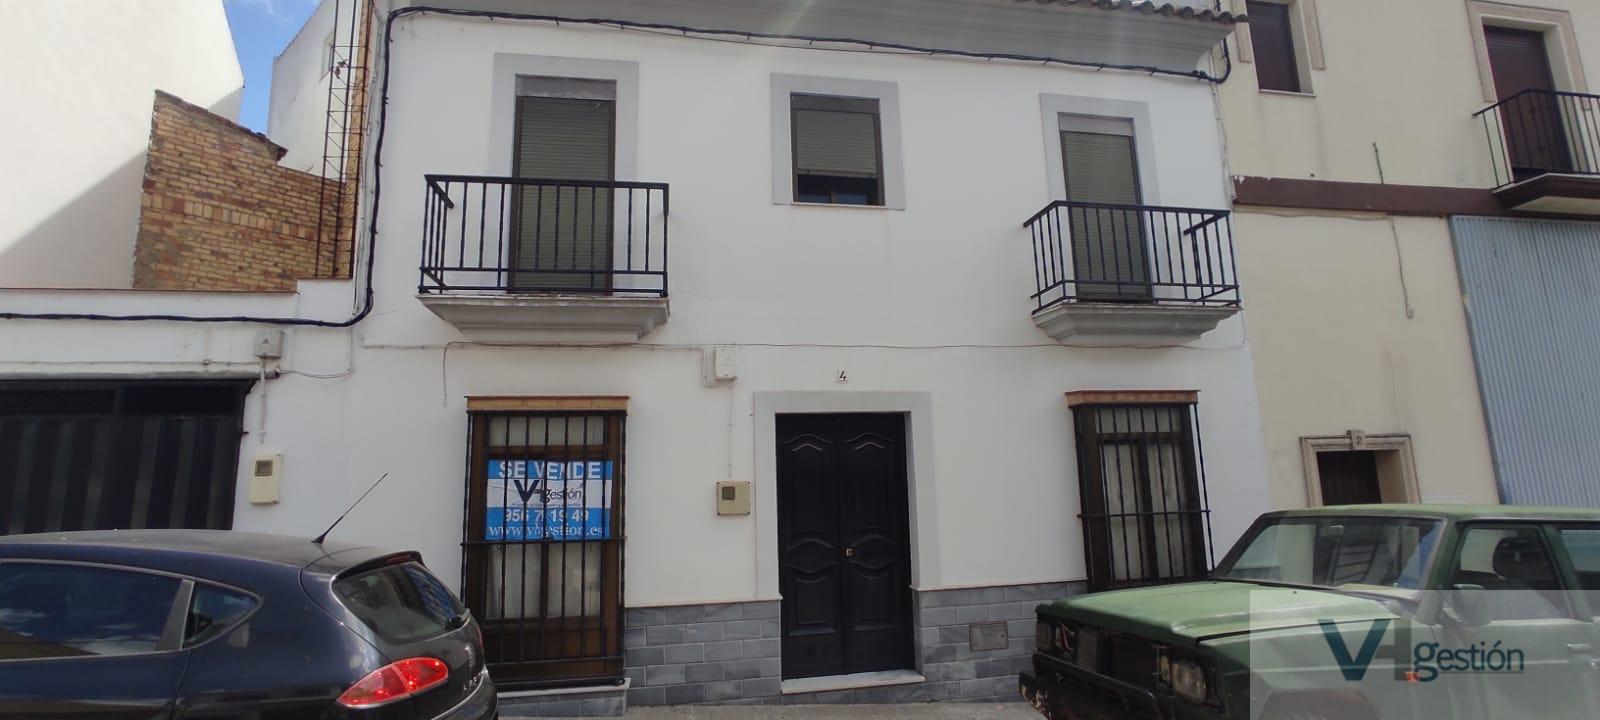 Venta de casa en Prado del Rey